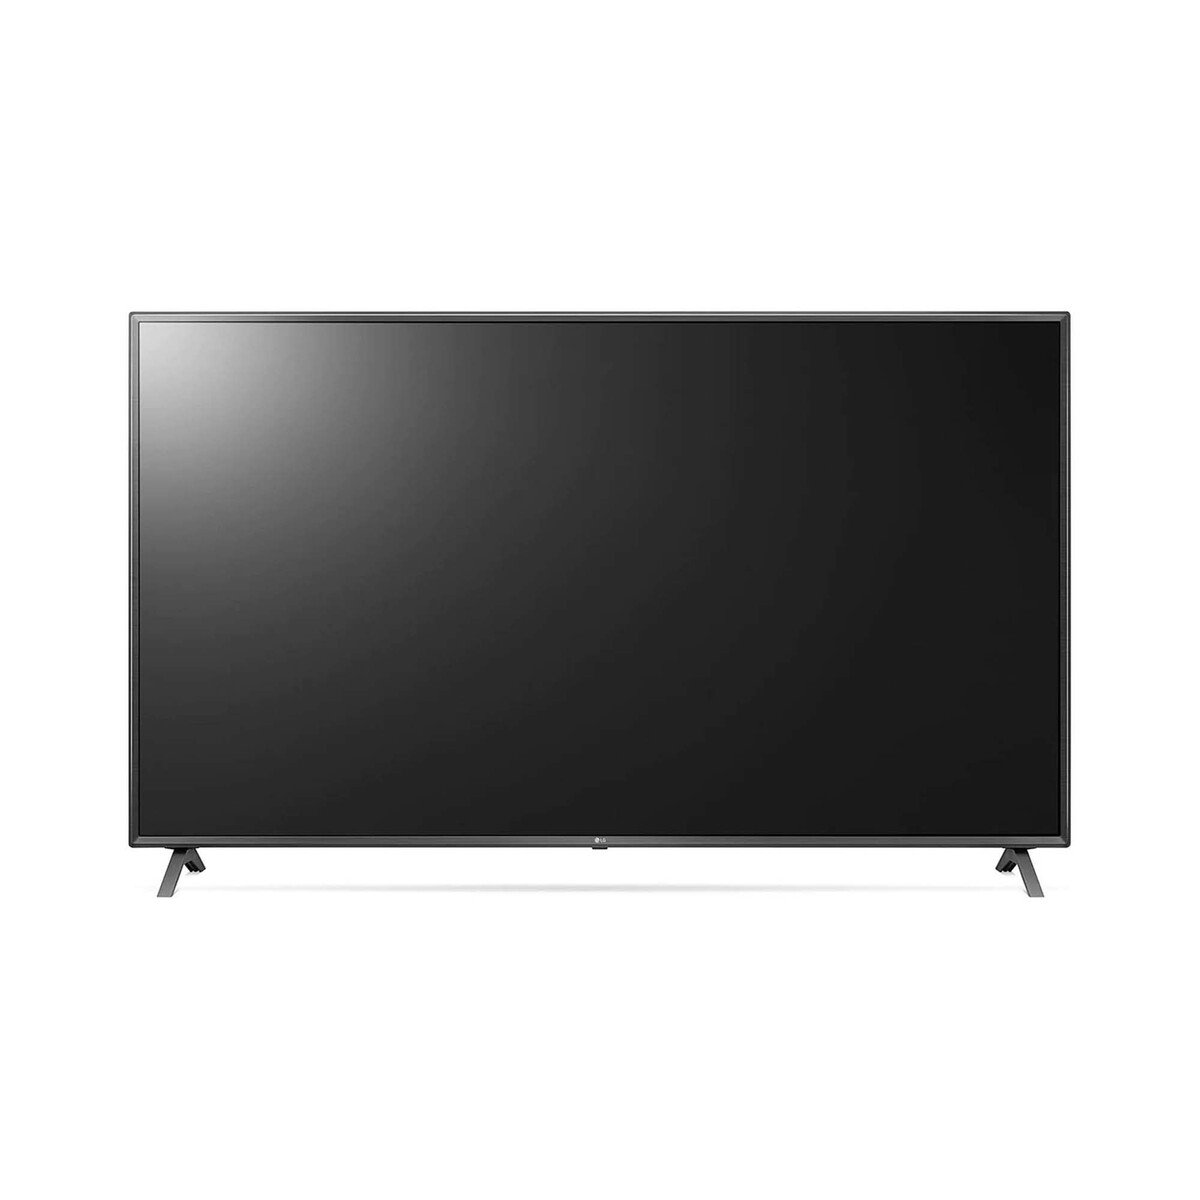 LG UHD 4K TV 65 Inch (65UN8060PVB)UN80 (Series 2020)